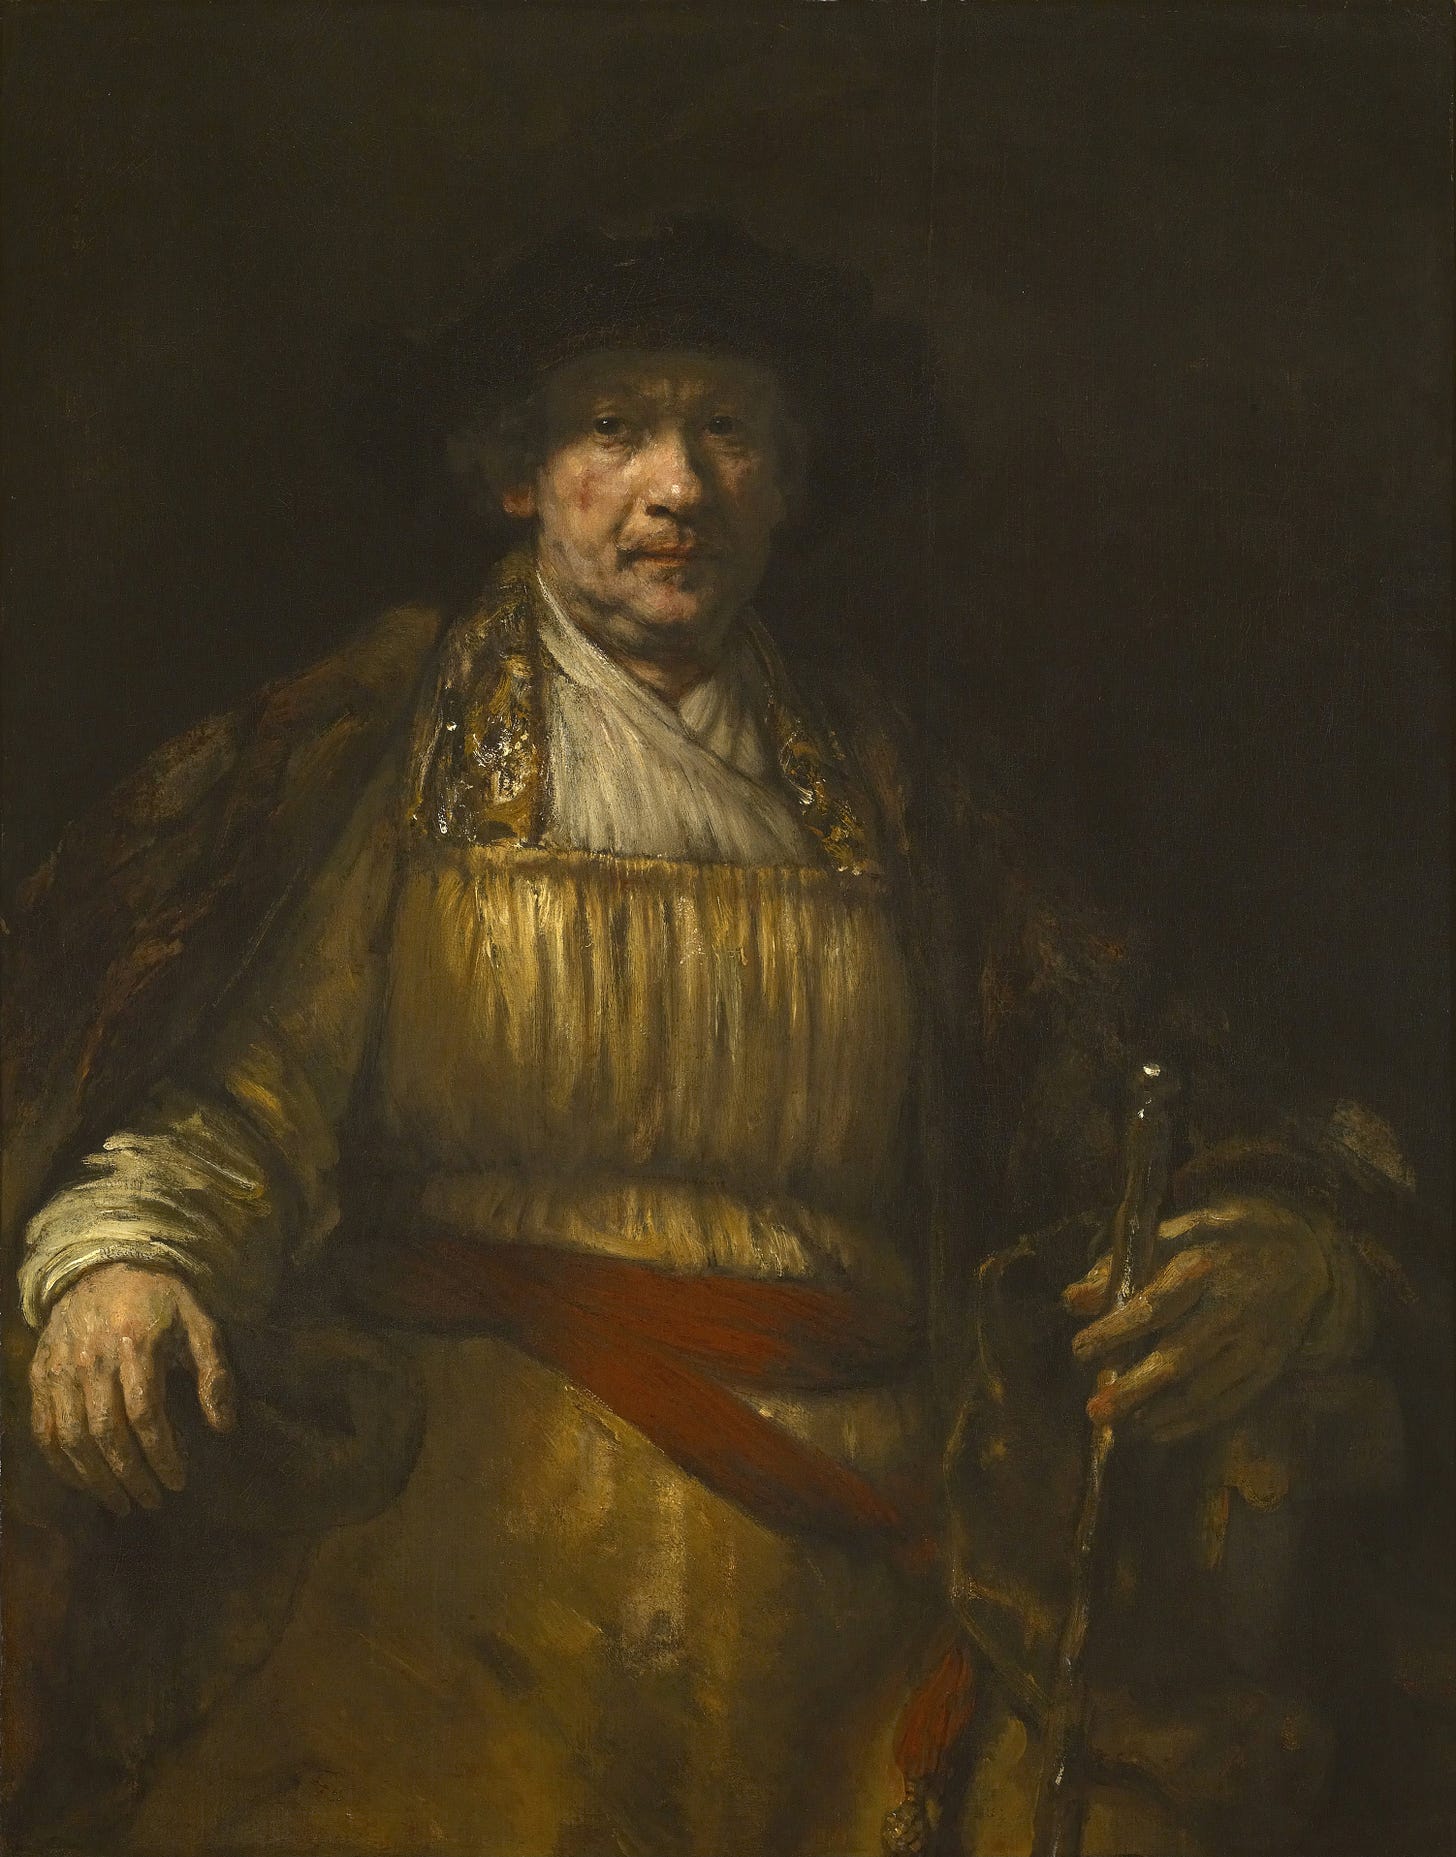 Self-portrait (1658) by Rembrandt van Rijn